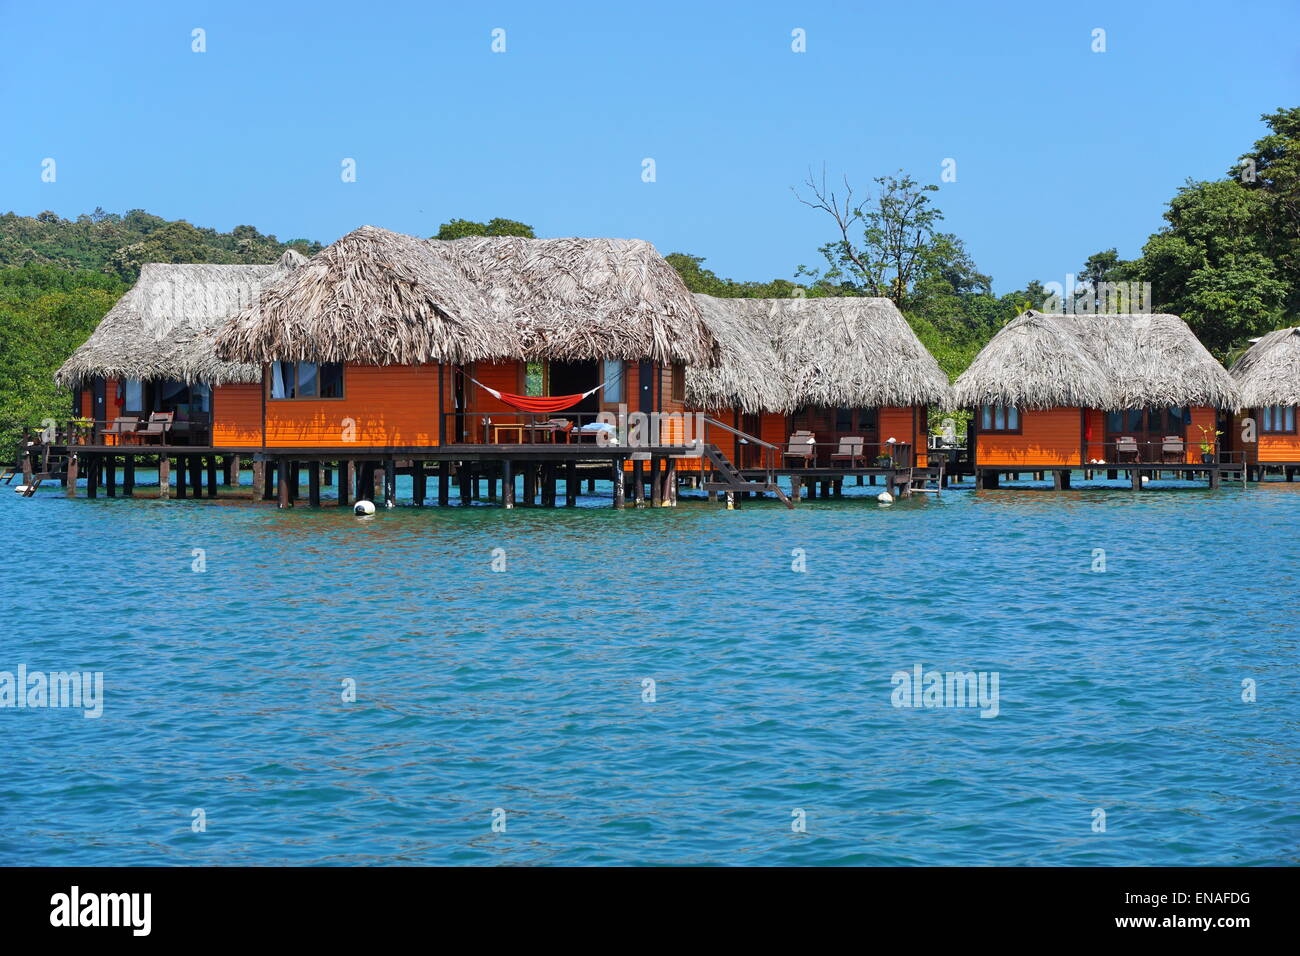 Bungalows sur pilotis au toit de chaume sur la côte Caraïbe du Panama, Bocas del Toro, l'Amérique centrale Banque D'Images